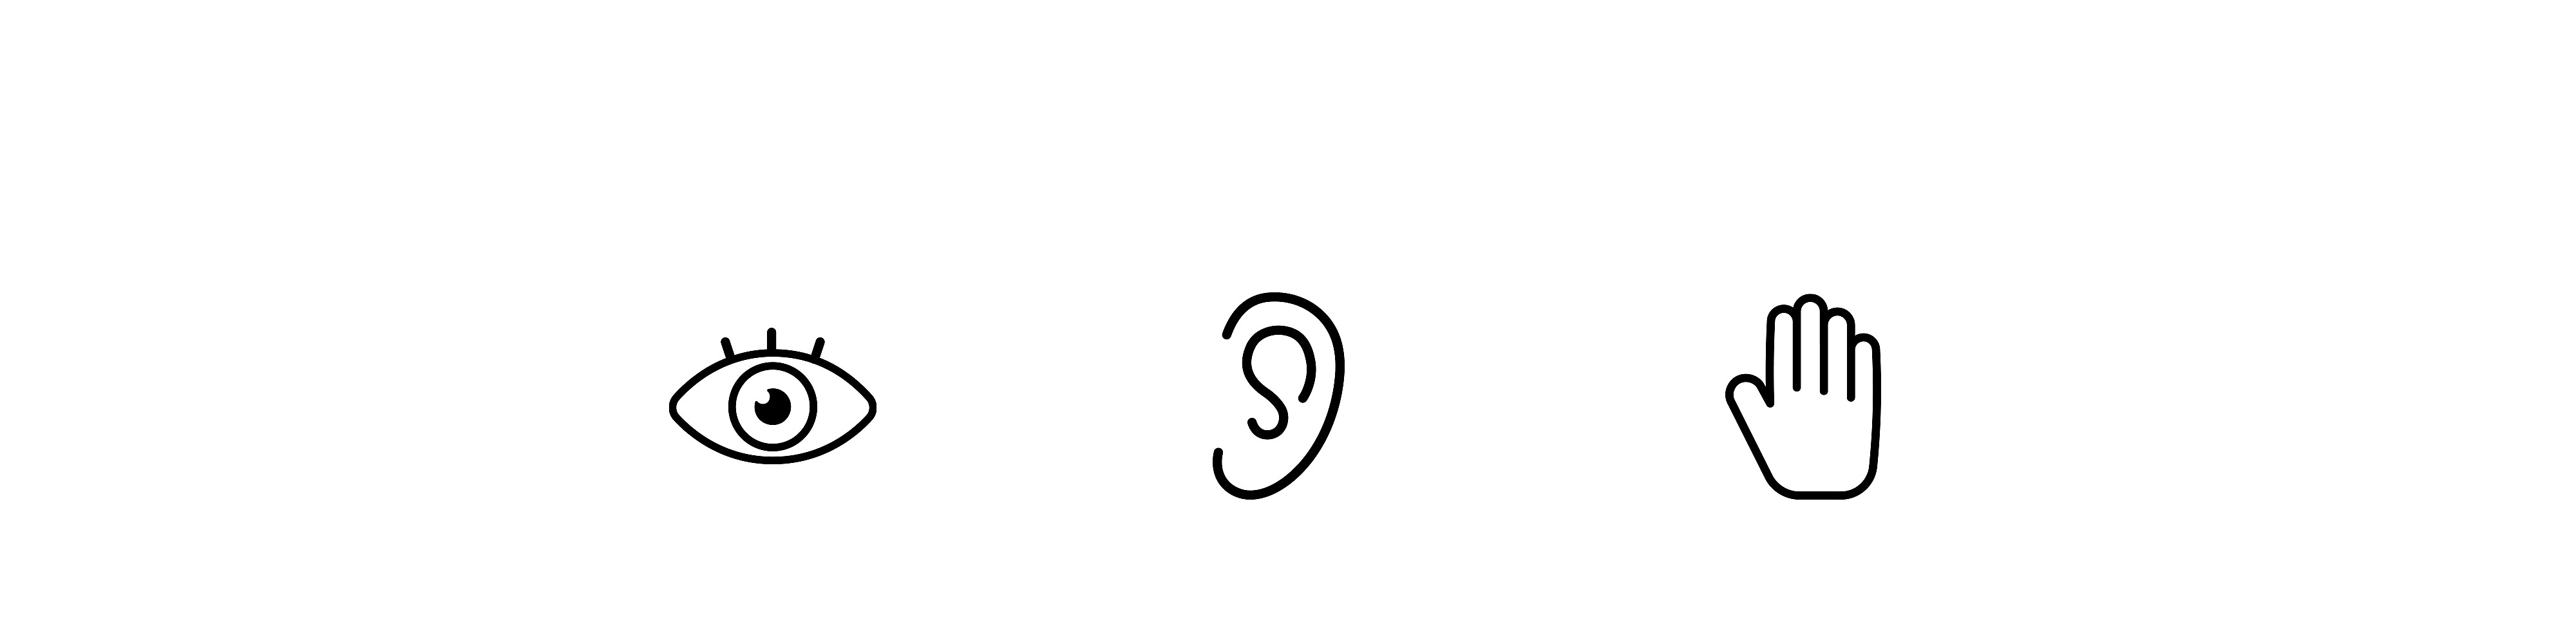 Três ícones lado a lado, à esquerda um olho, no meio uma orelha e à direita uma mão